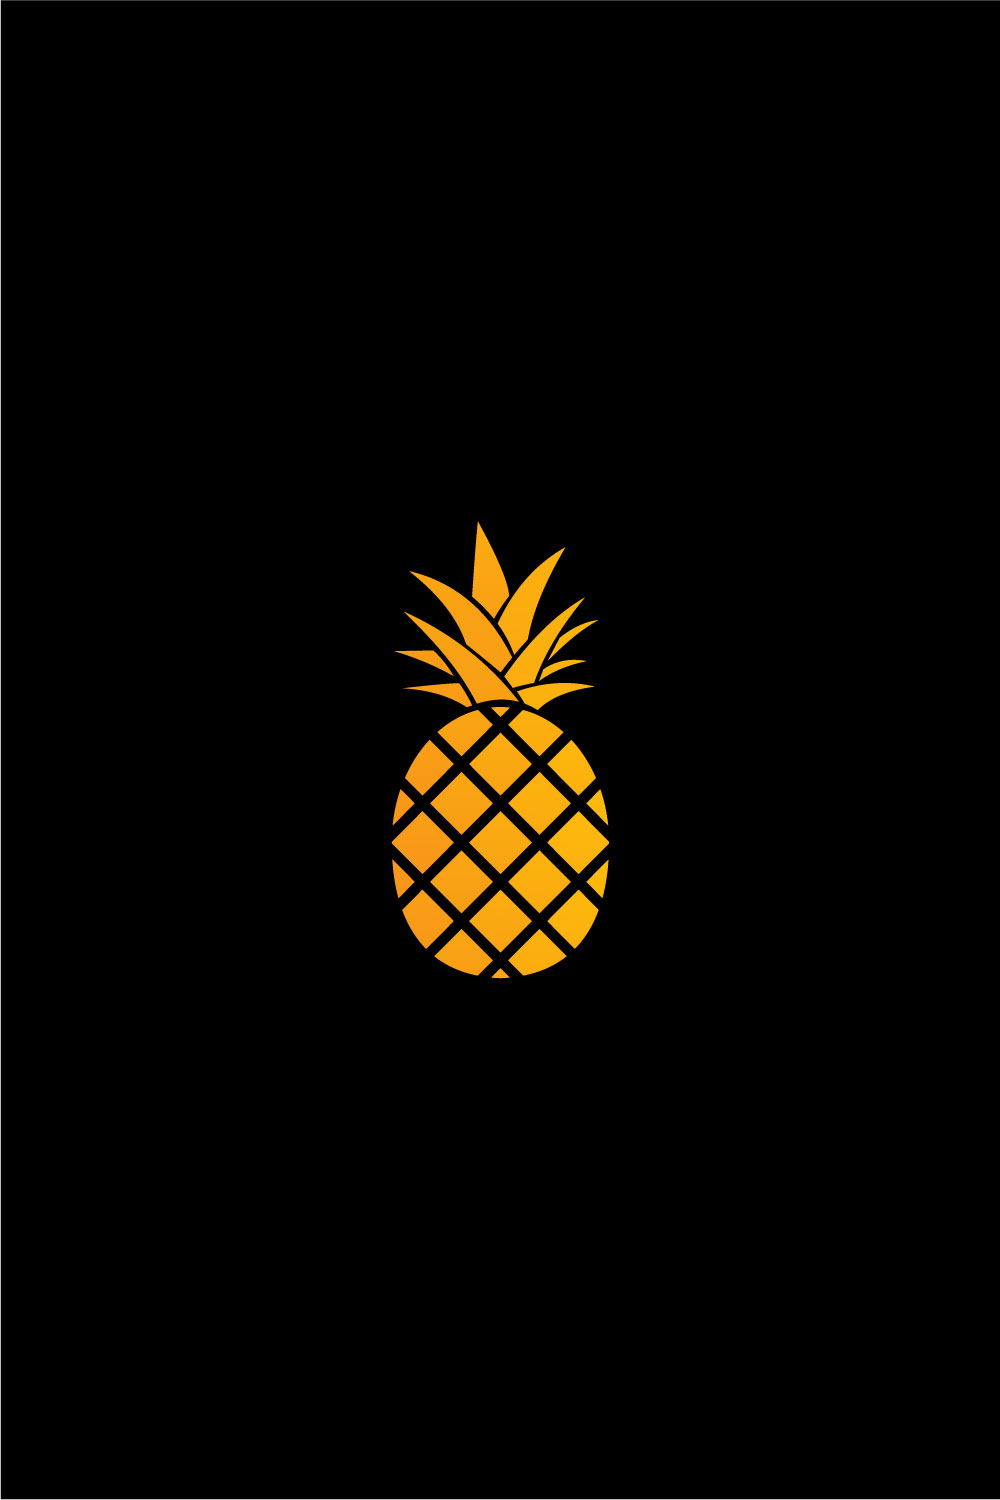 Pineapple Logo Fruit pinterest image.